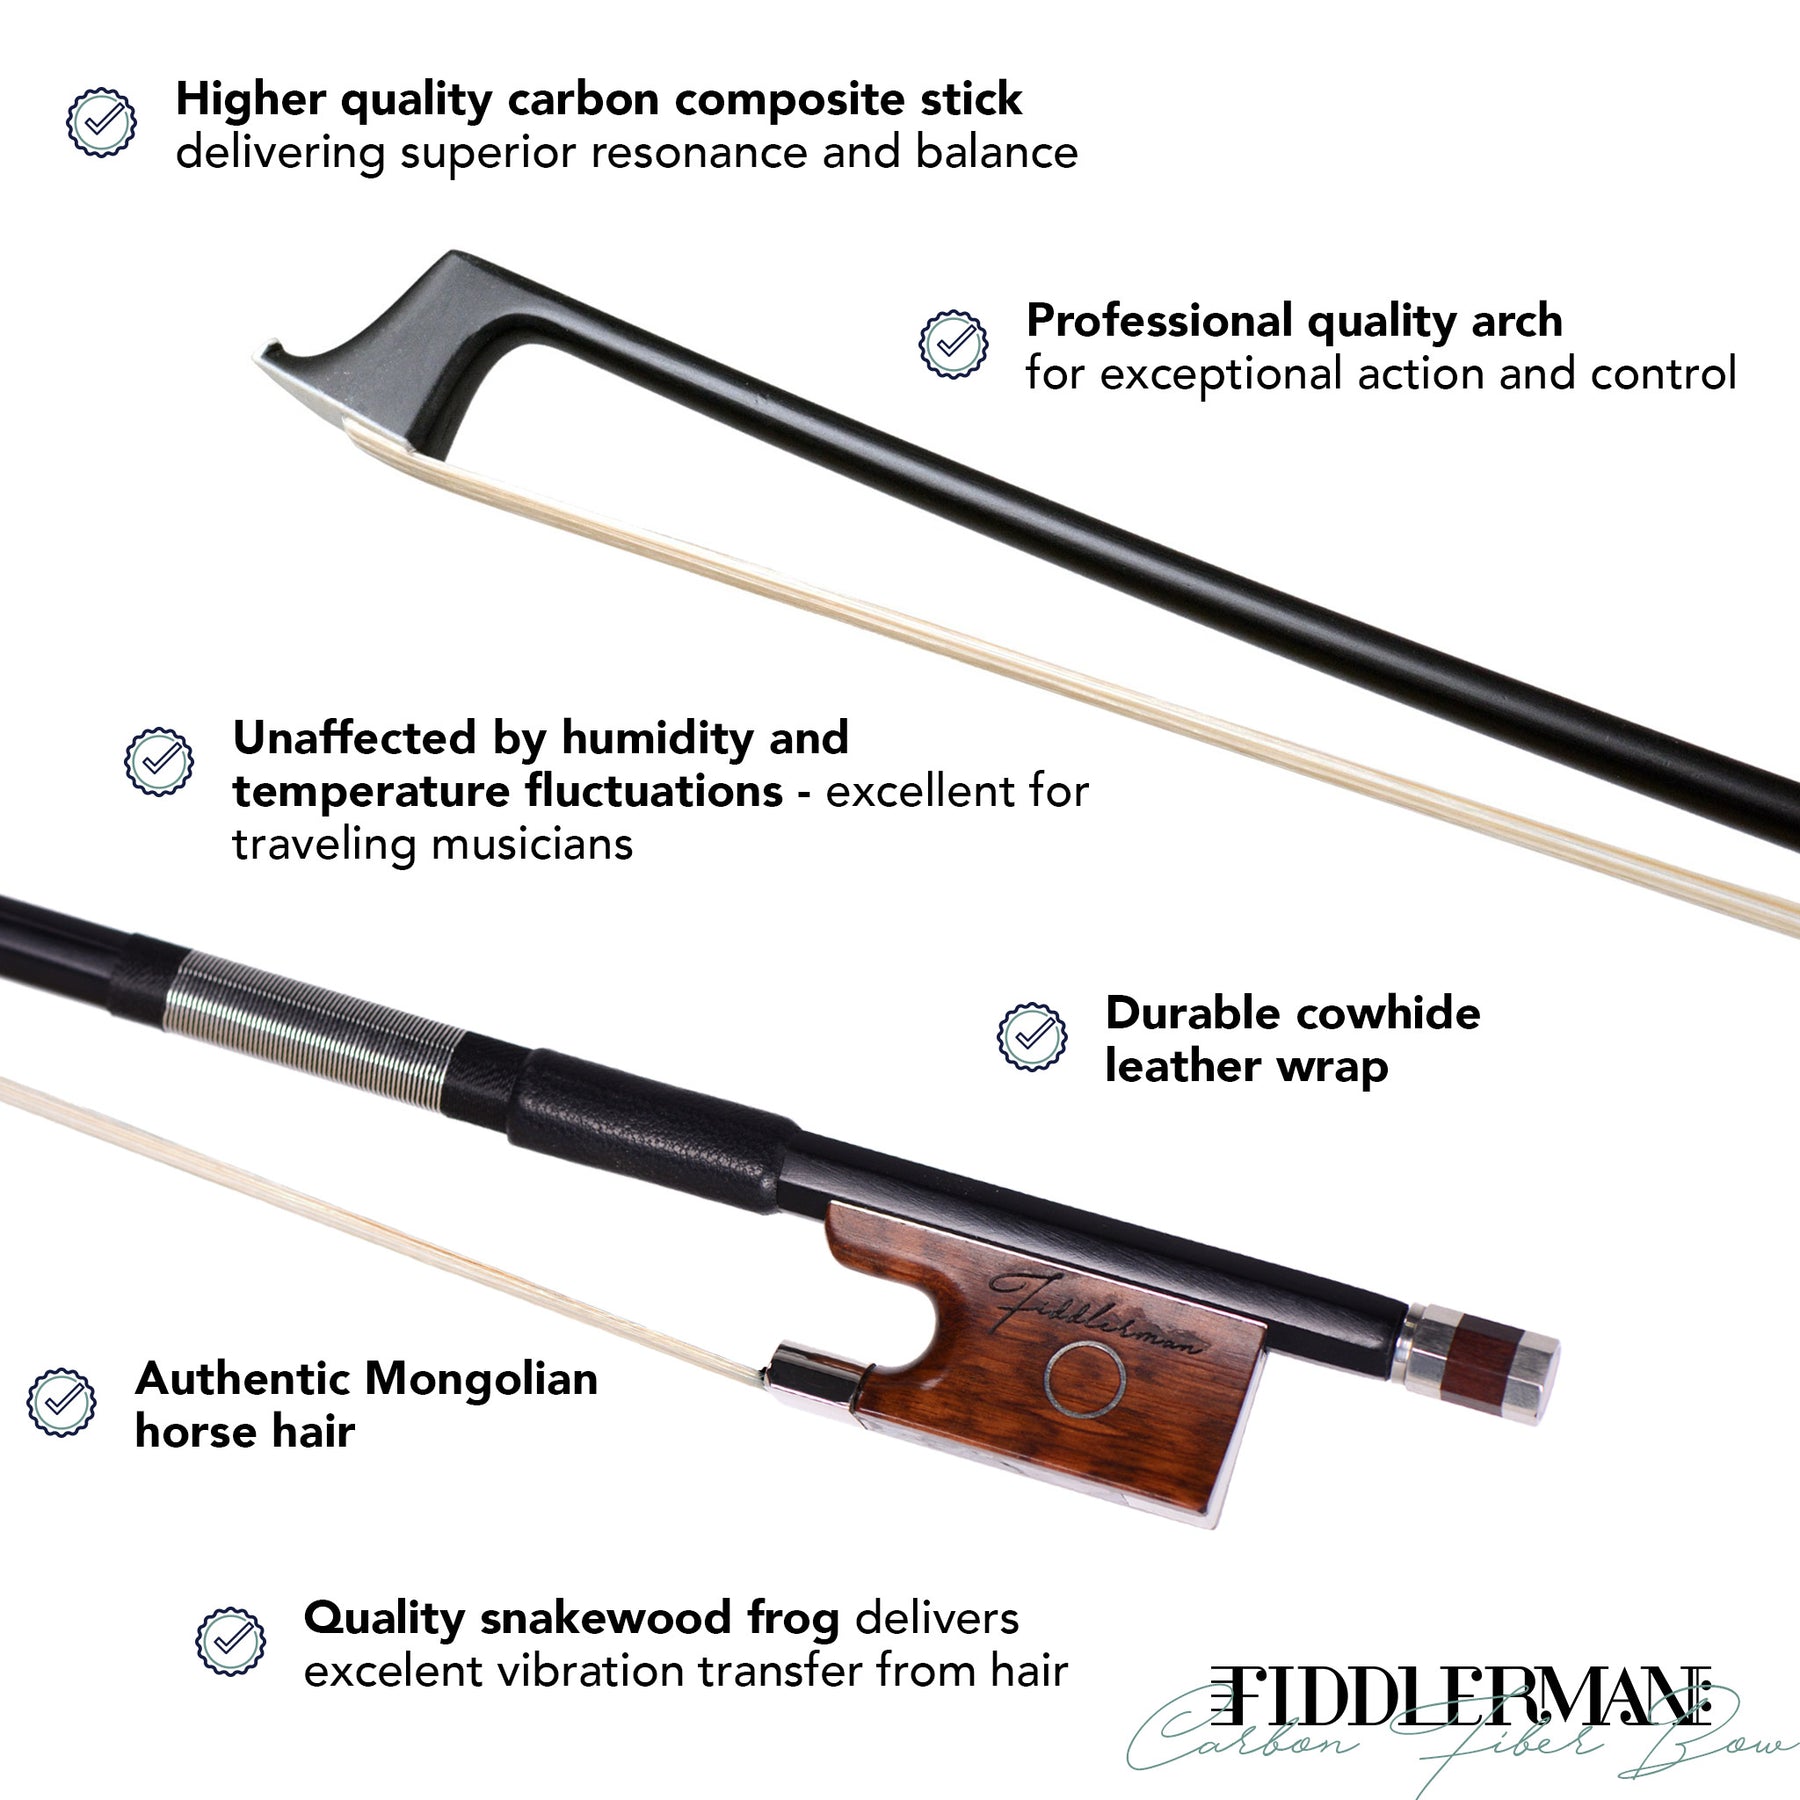 Fiddlerman Carbon Fiber Violin Bow